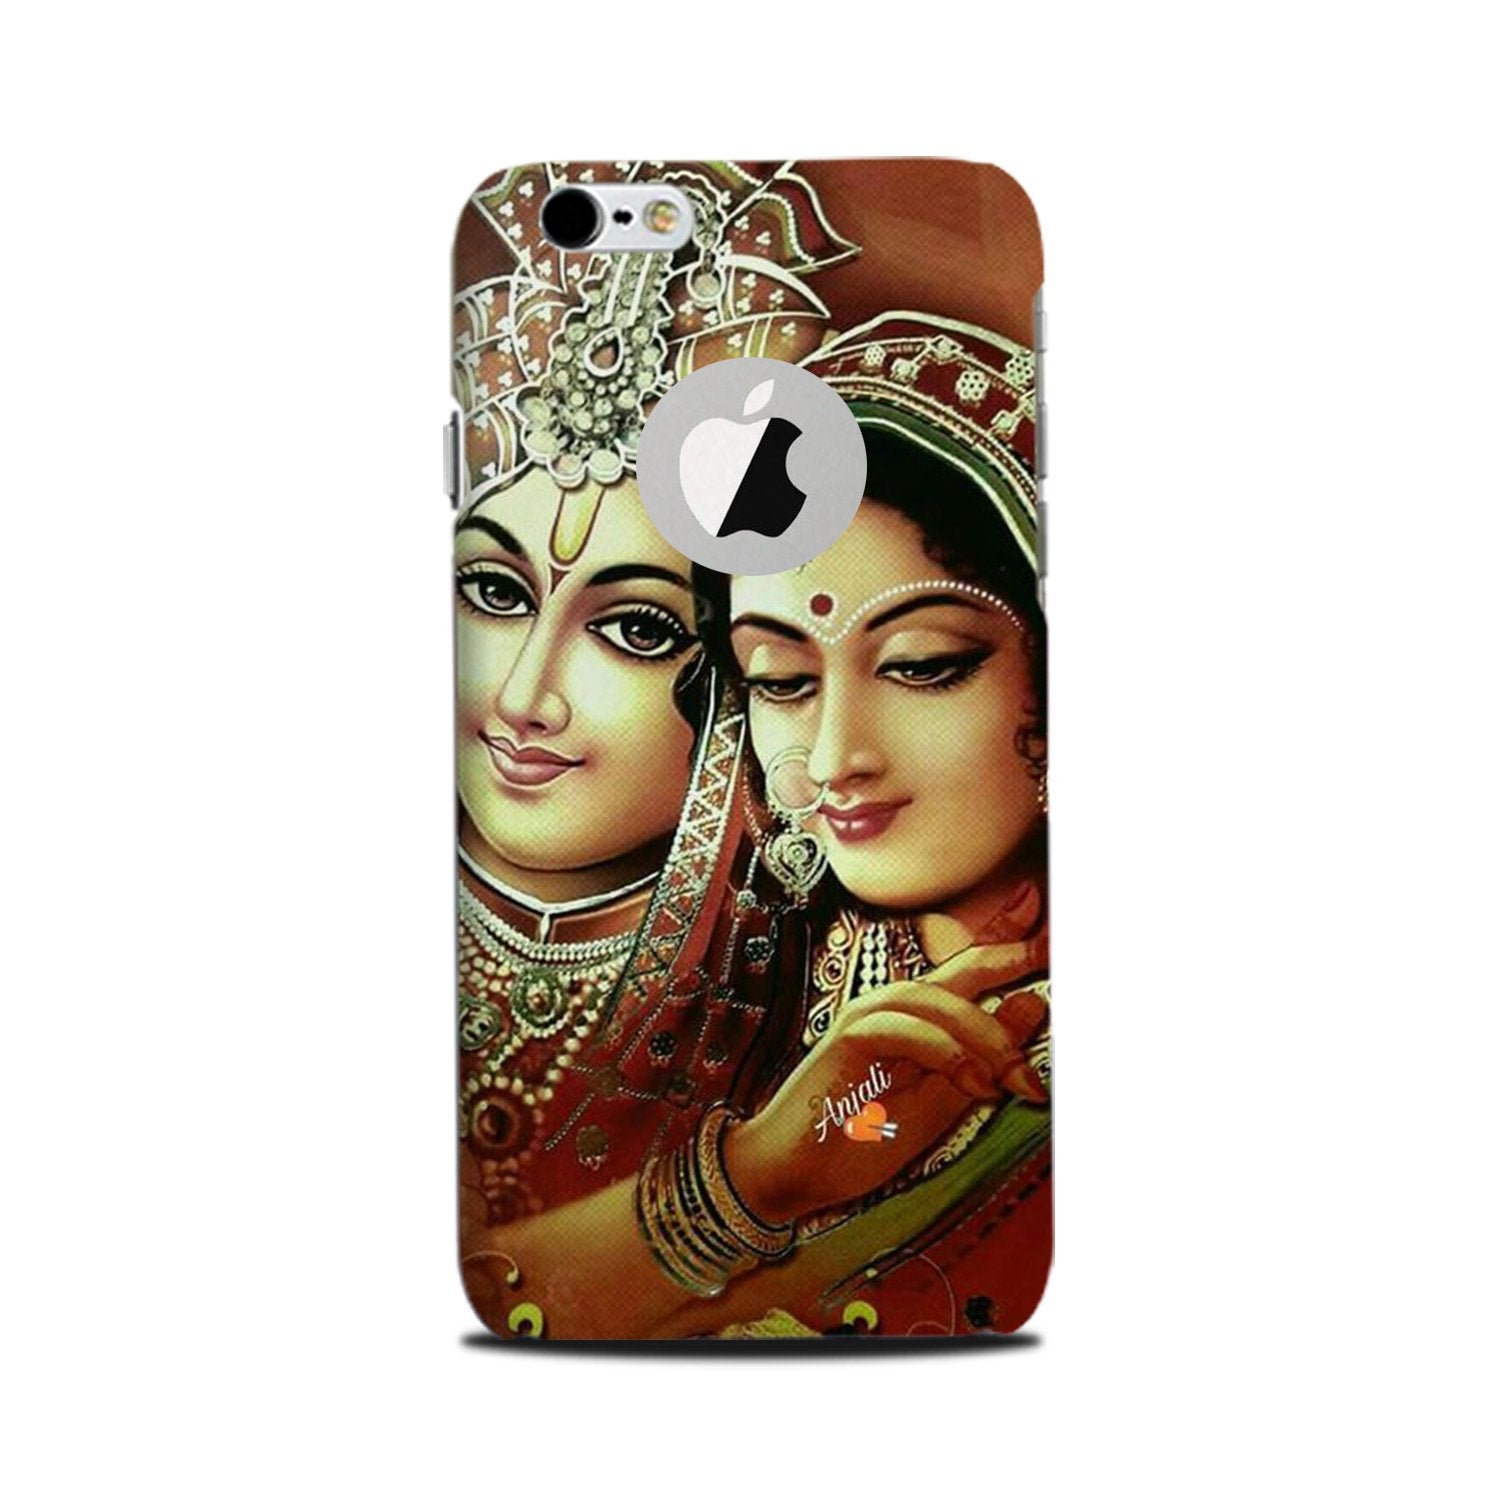 Radha Krishna Case for iPhone 6 Plus / 6s Plus logo cut(Design No. 289)